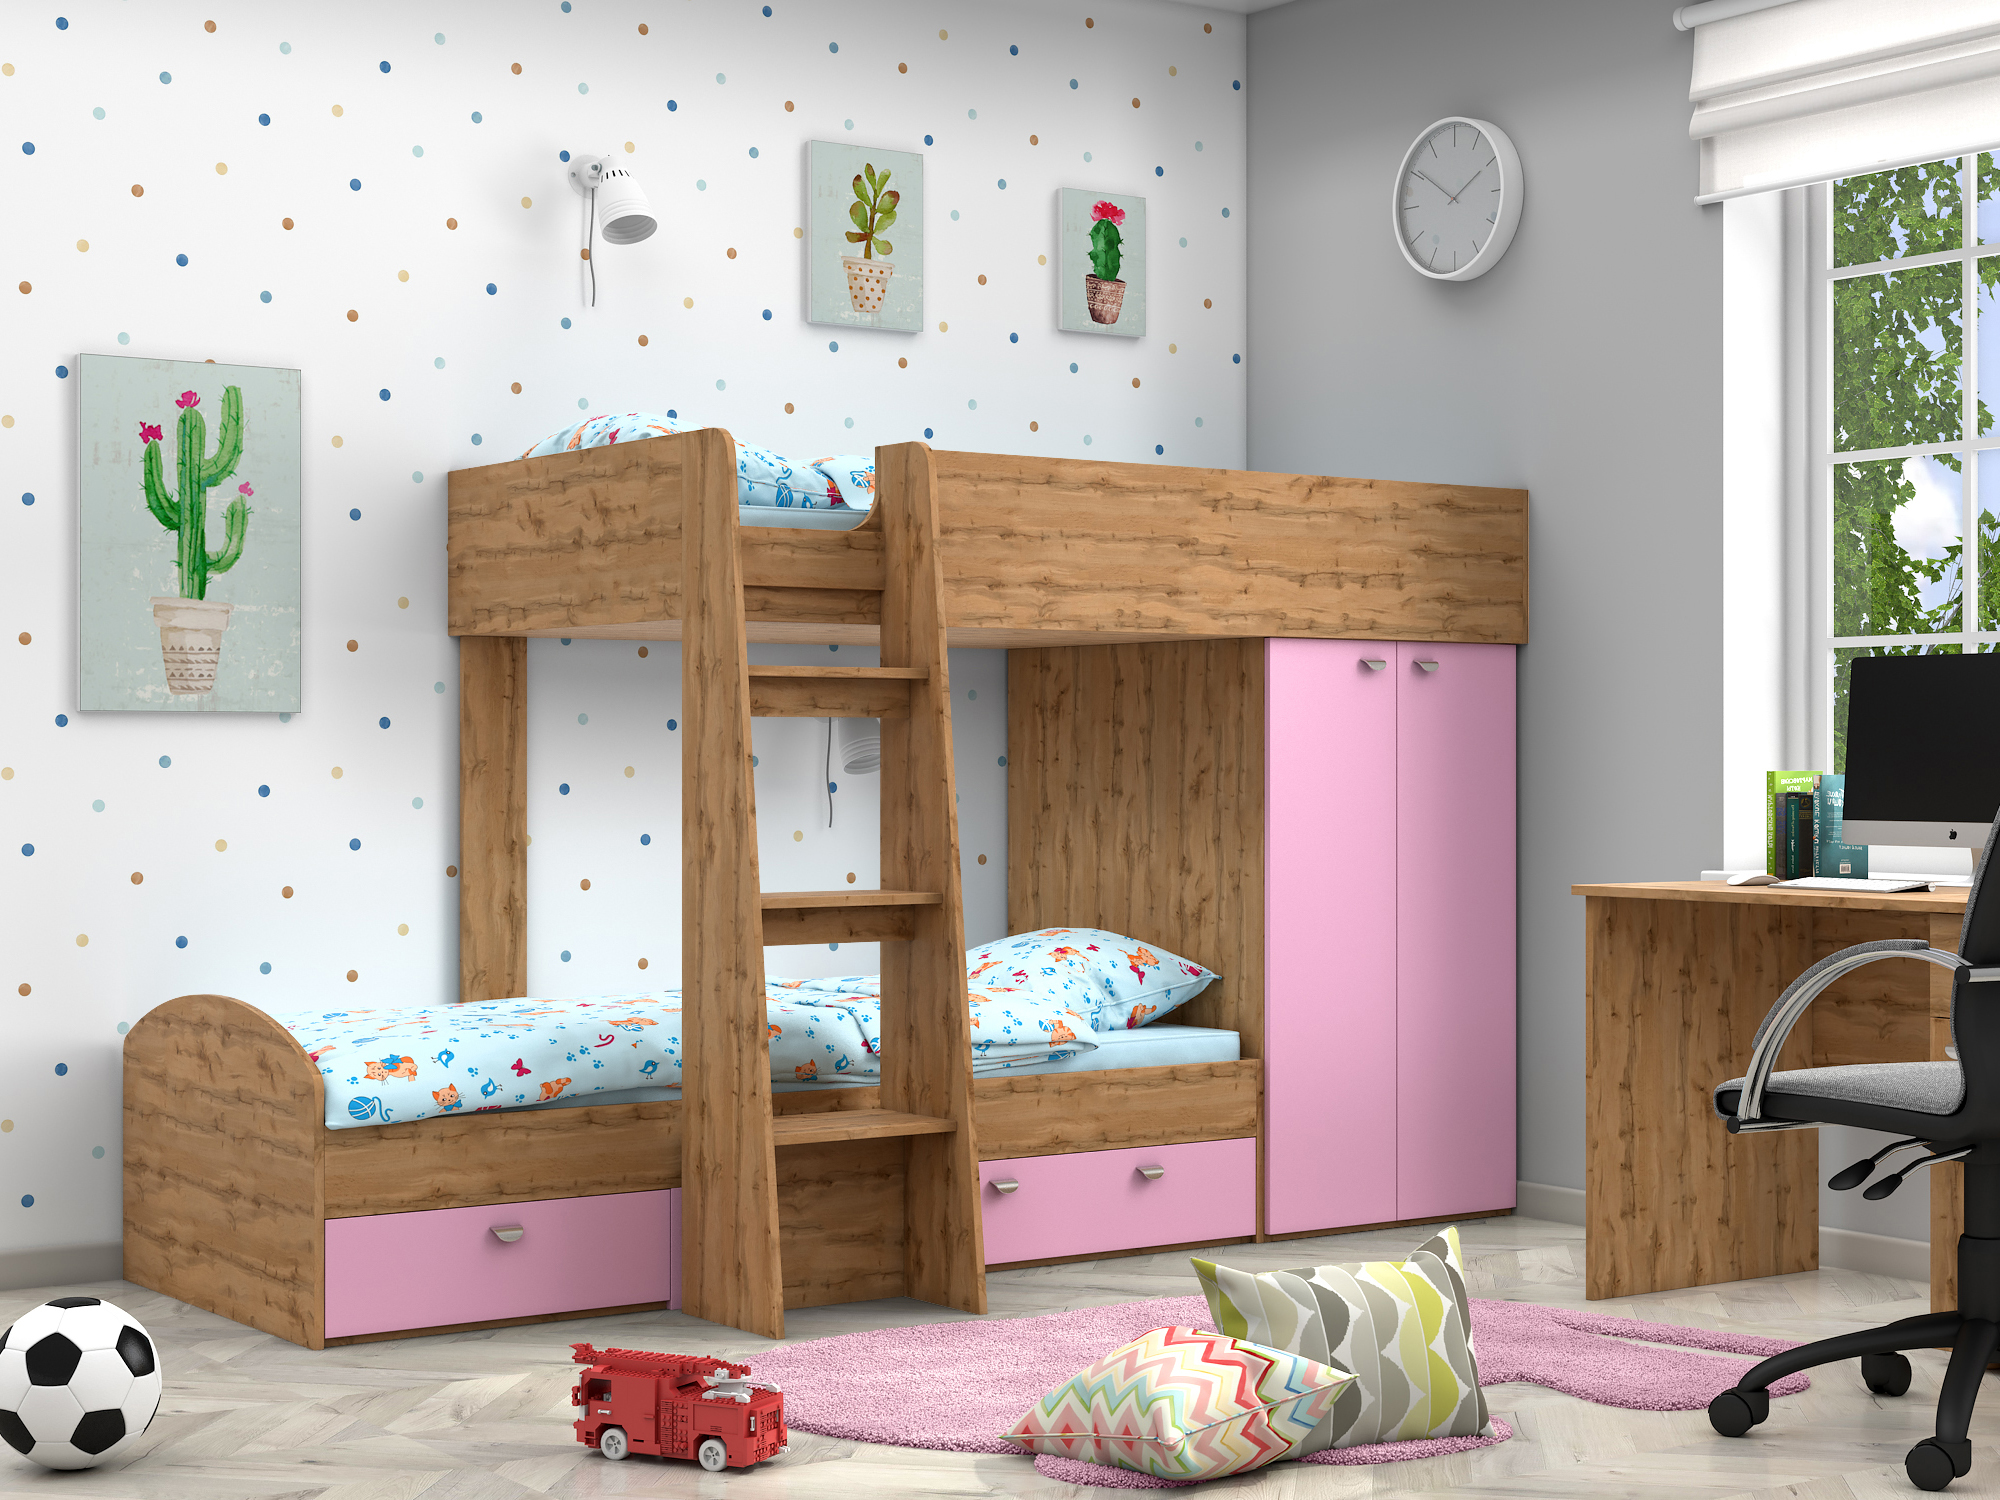 Двухъярусная кровать Golden Kids-2 (90х200) Розовый, Бежевый, ЛДСП двухъярусная кровать golden kids 2 90х200 зеленый бежевый лдсп